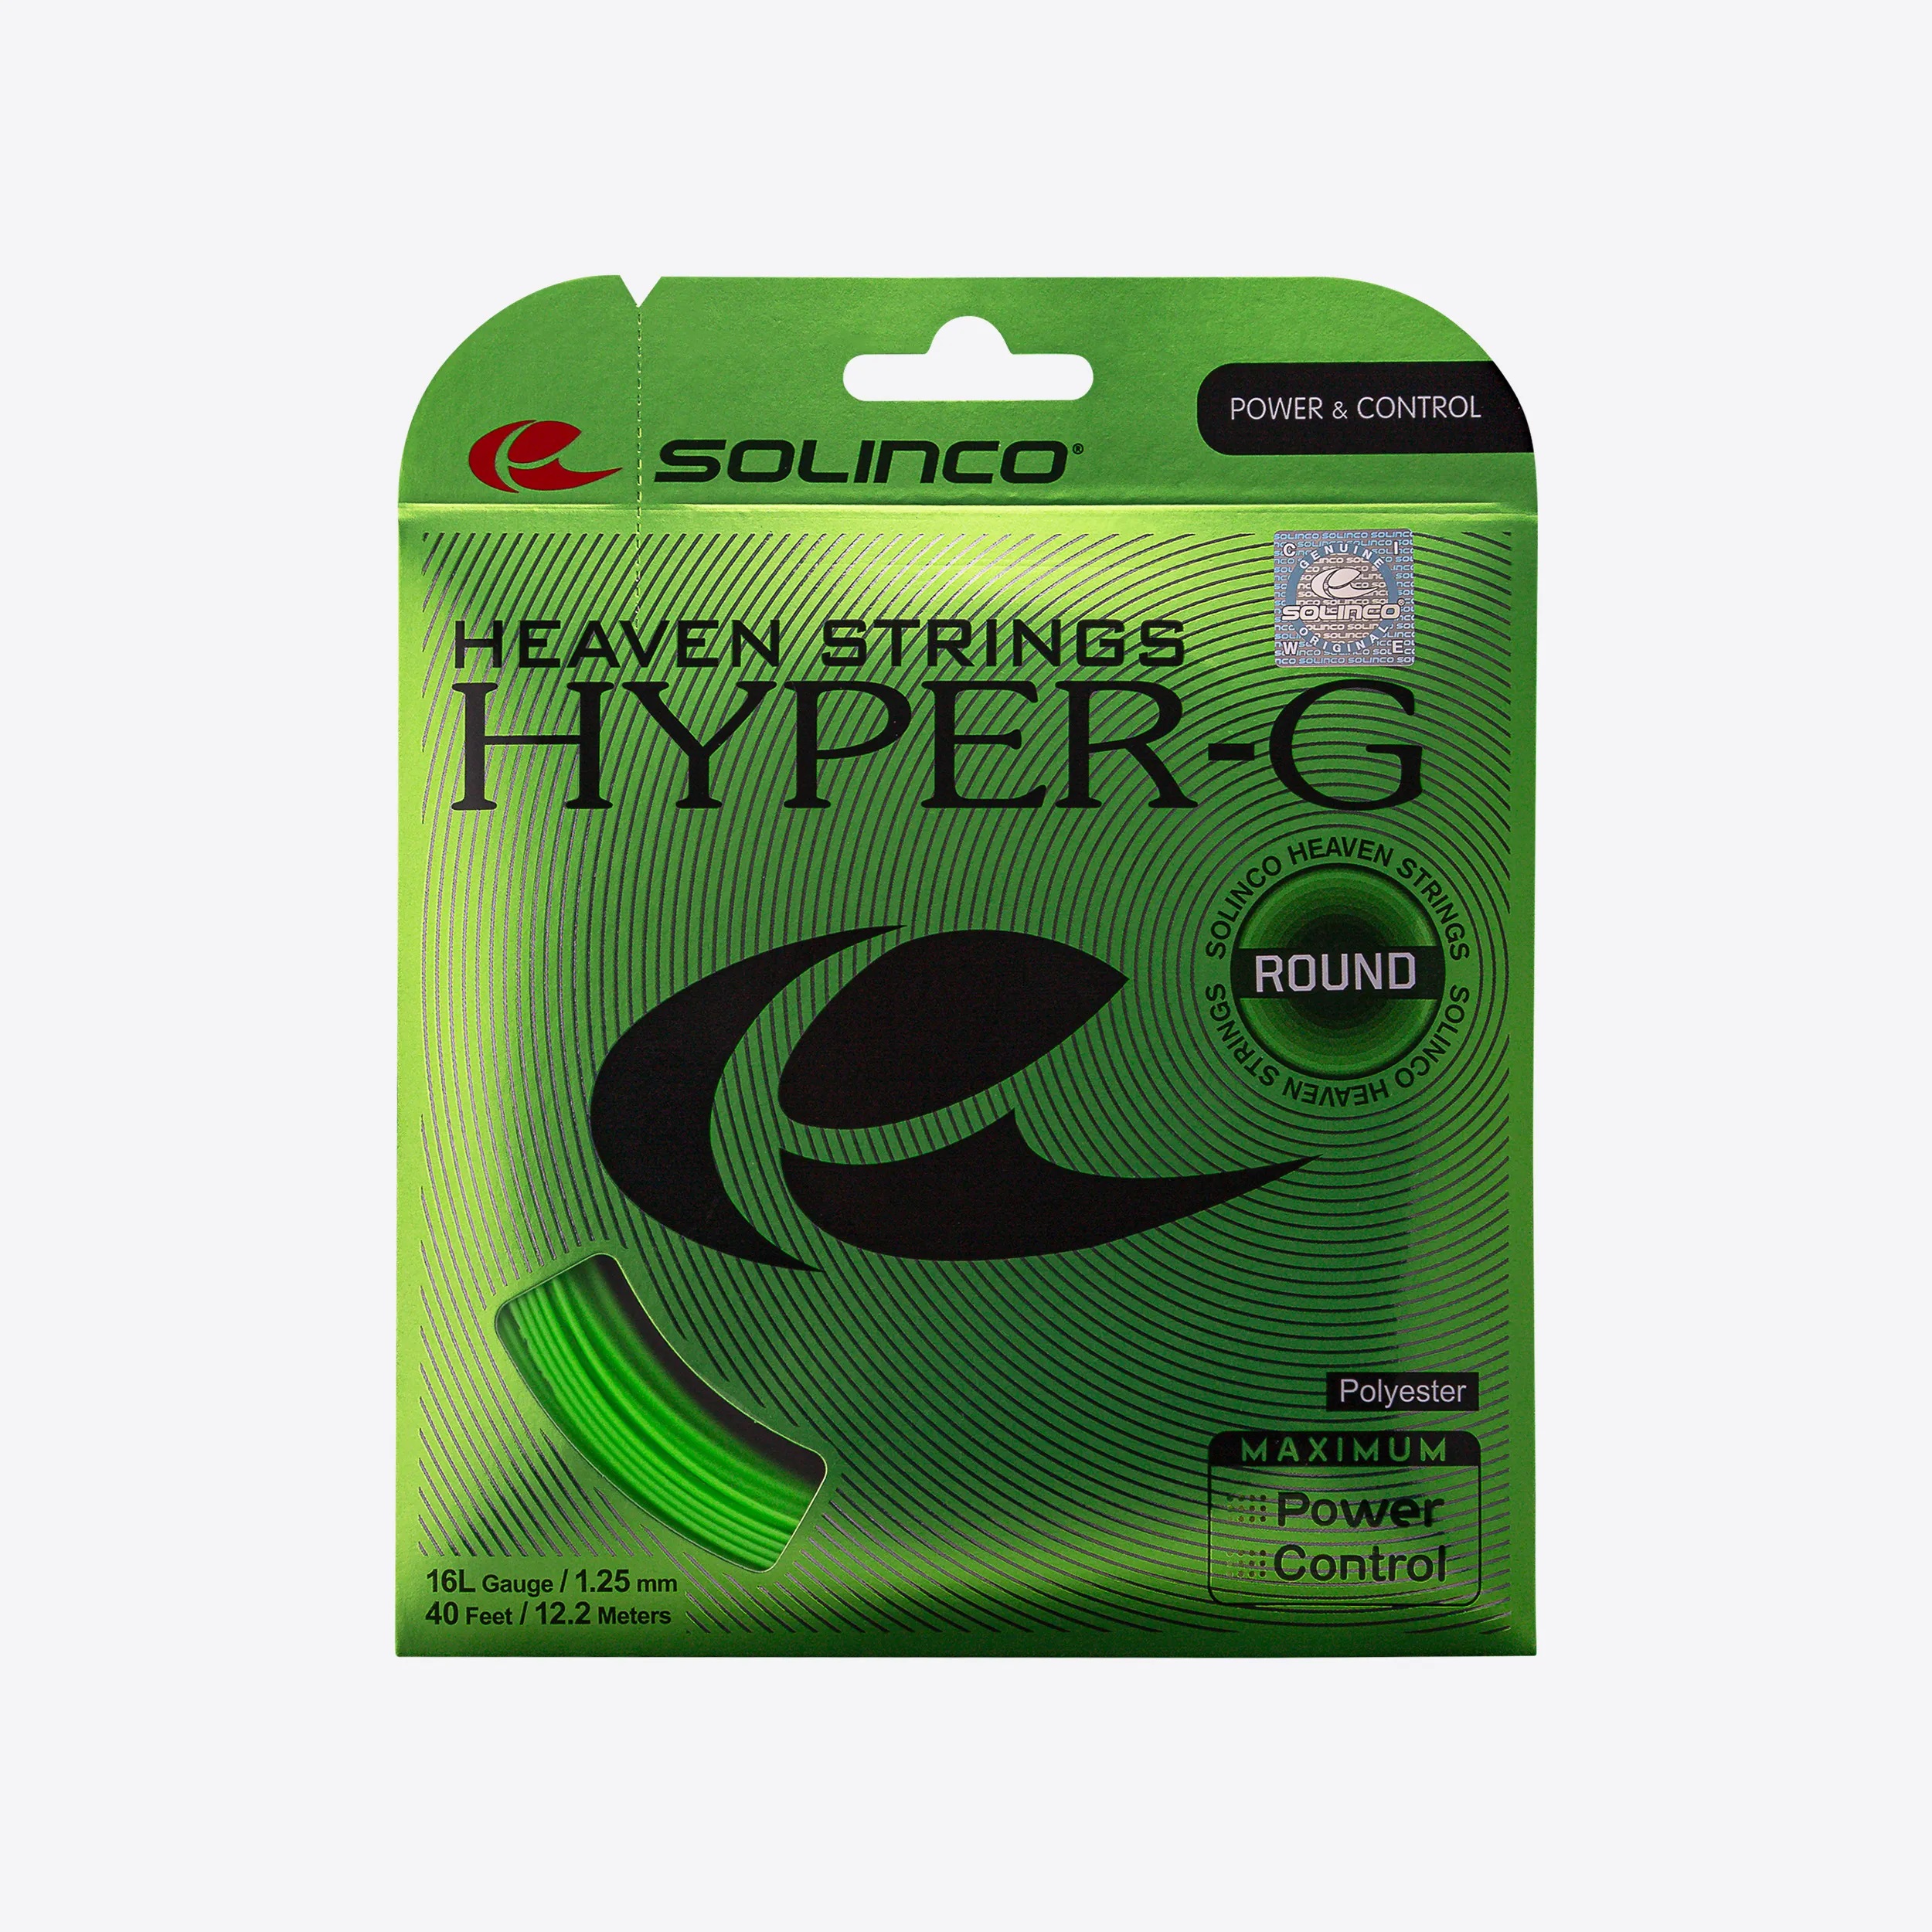 Solinco Hyper-G ROUND, 12m